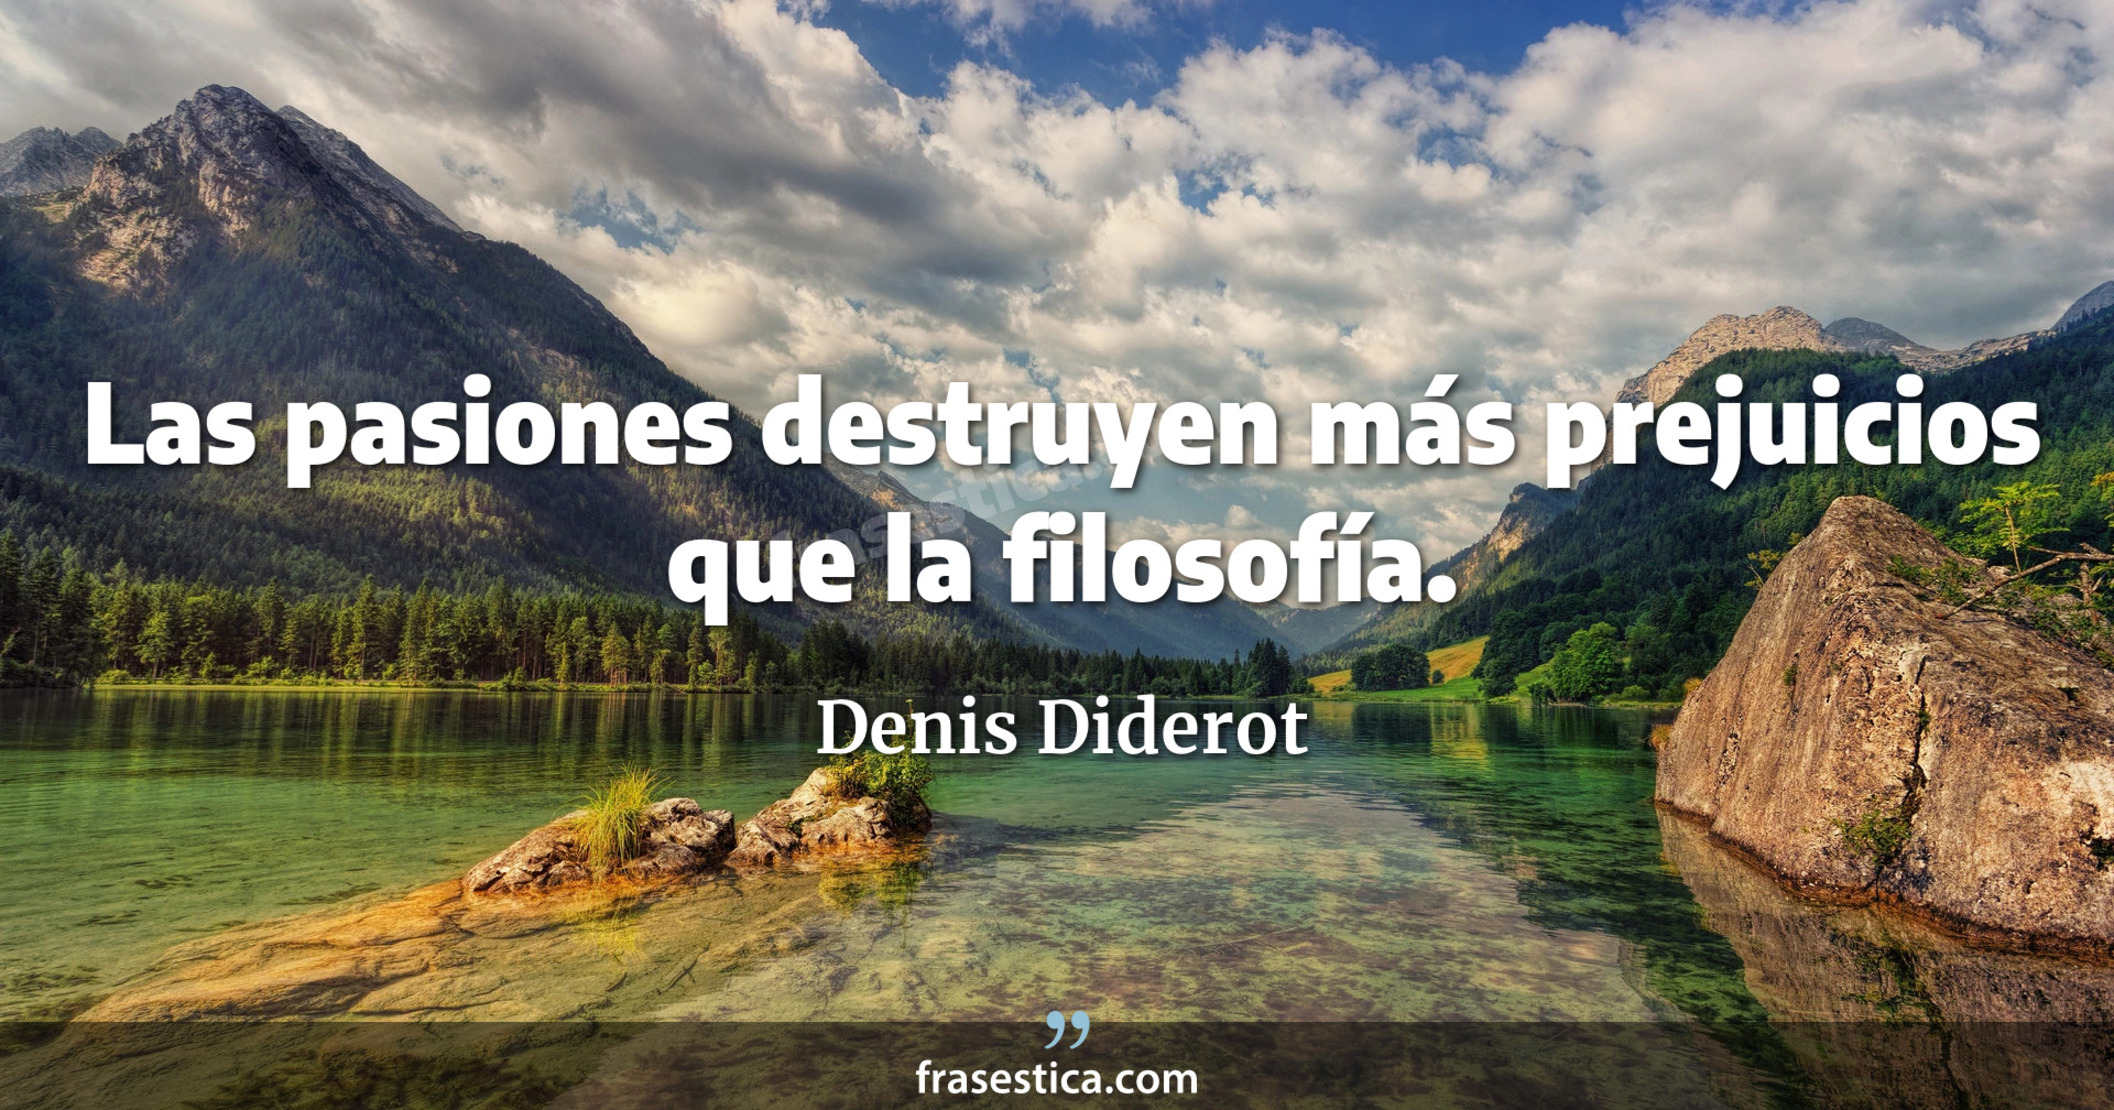 Las pasiones destruyen más prejuicios que la filosofía. - Denis Diderot